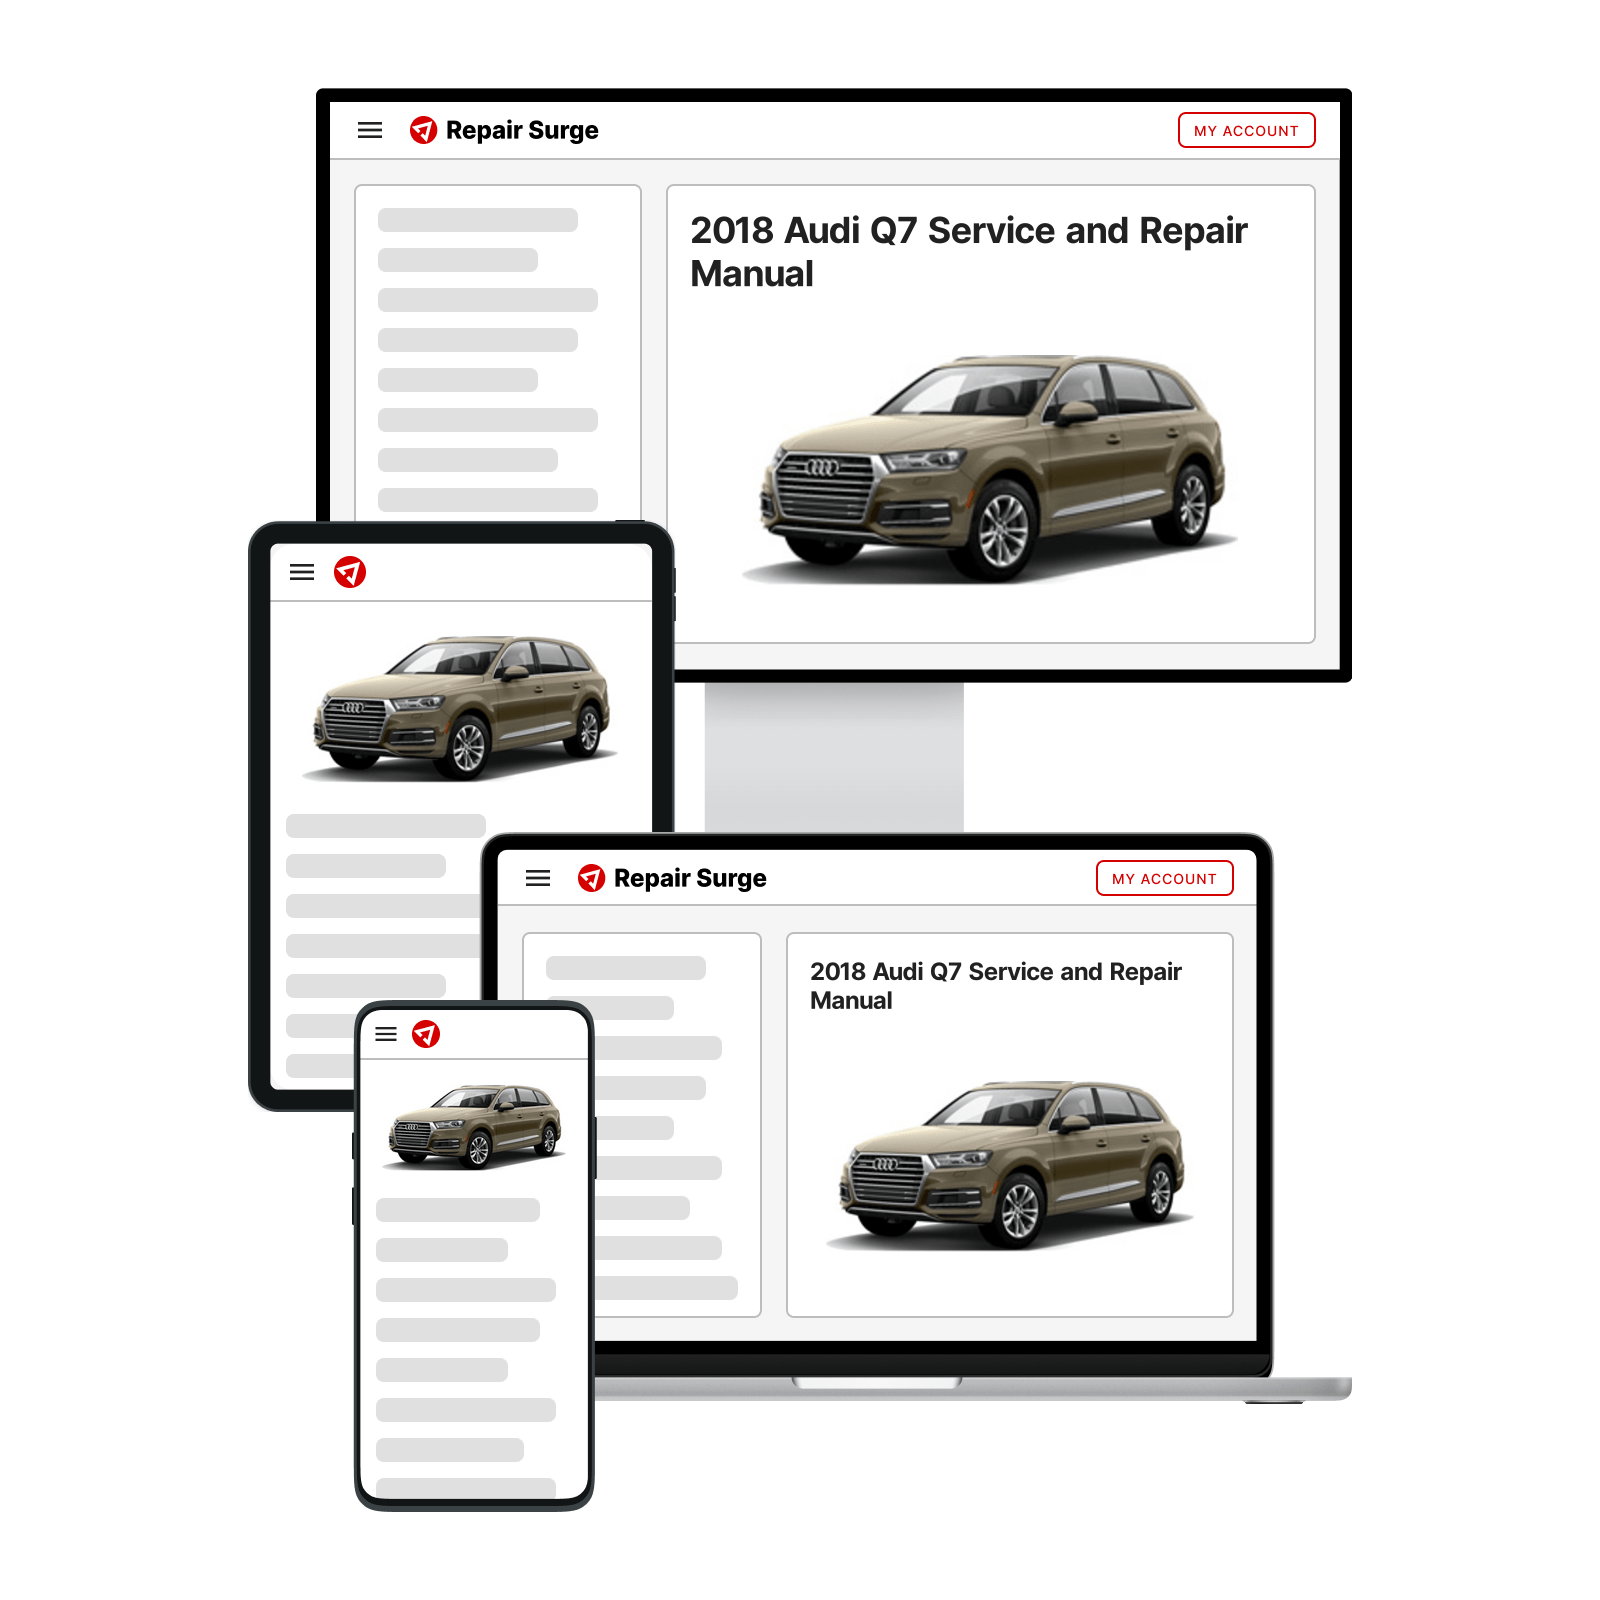 2018 Audi Q7 service and repair manual hero image